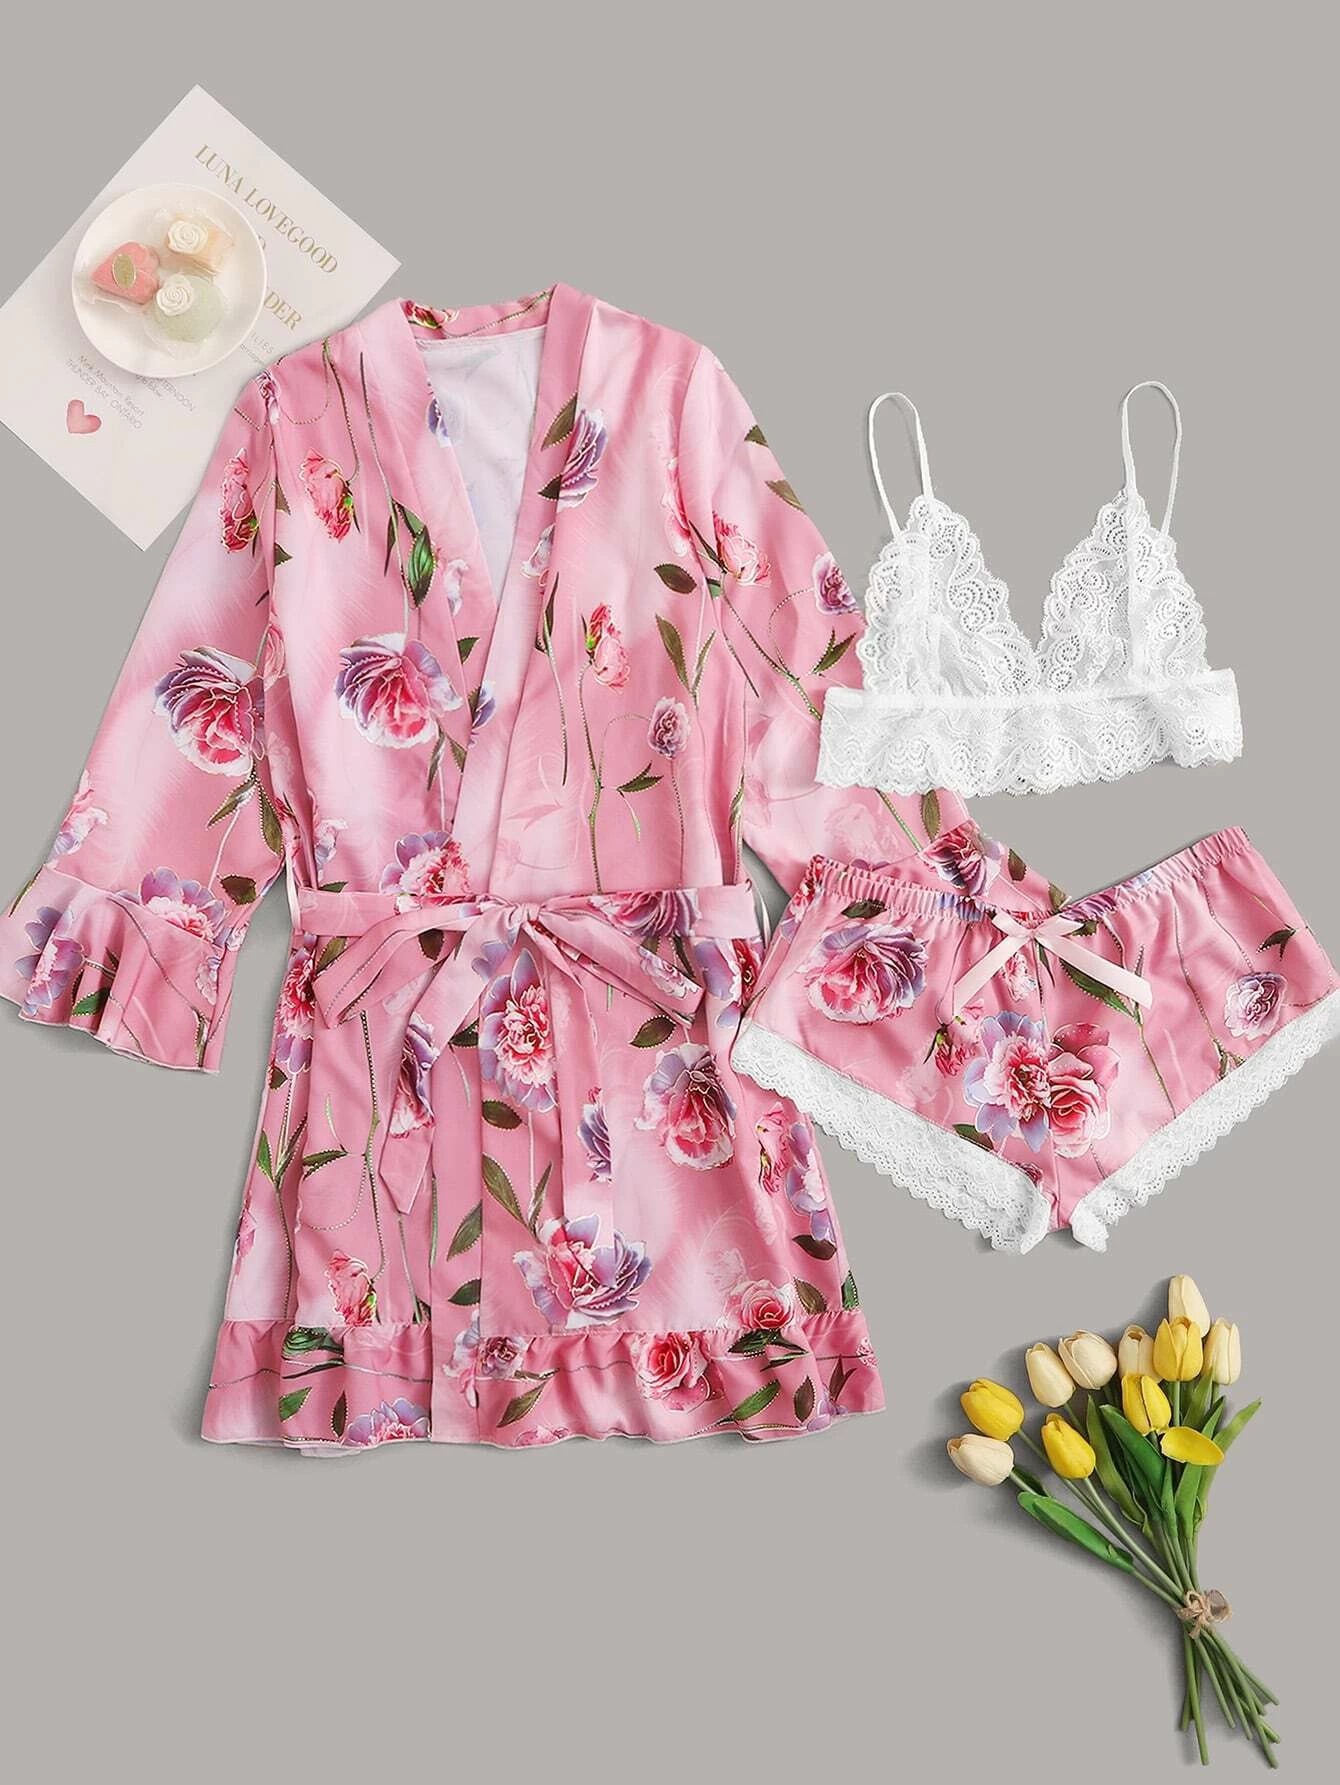 Amazon Explosive Pajamas Imitation Silk...